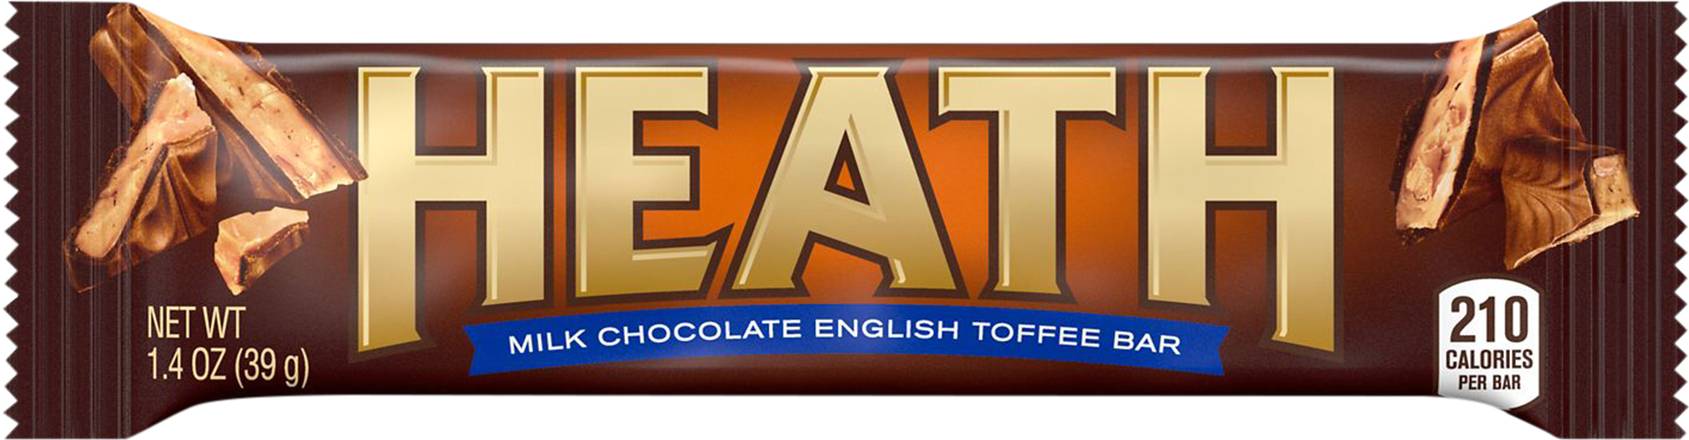 Heath Milk Chocolate English Toffee Bar